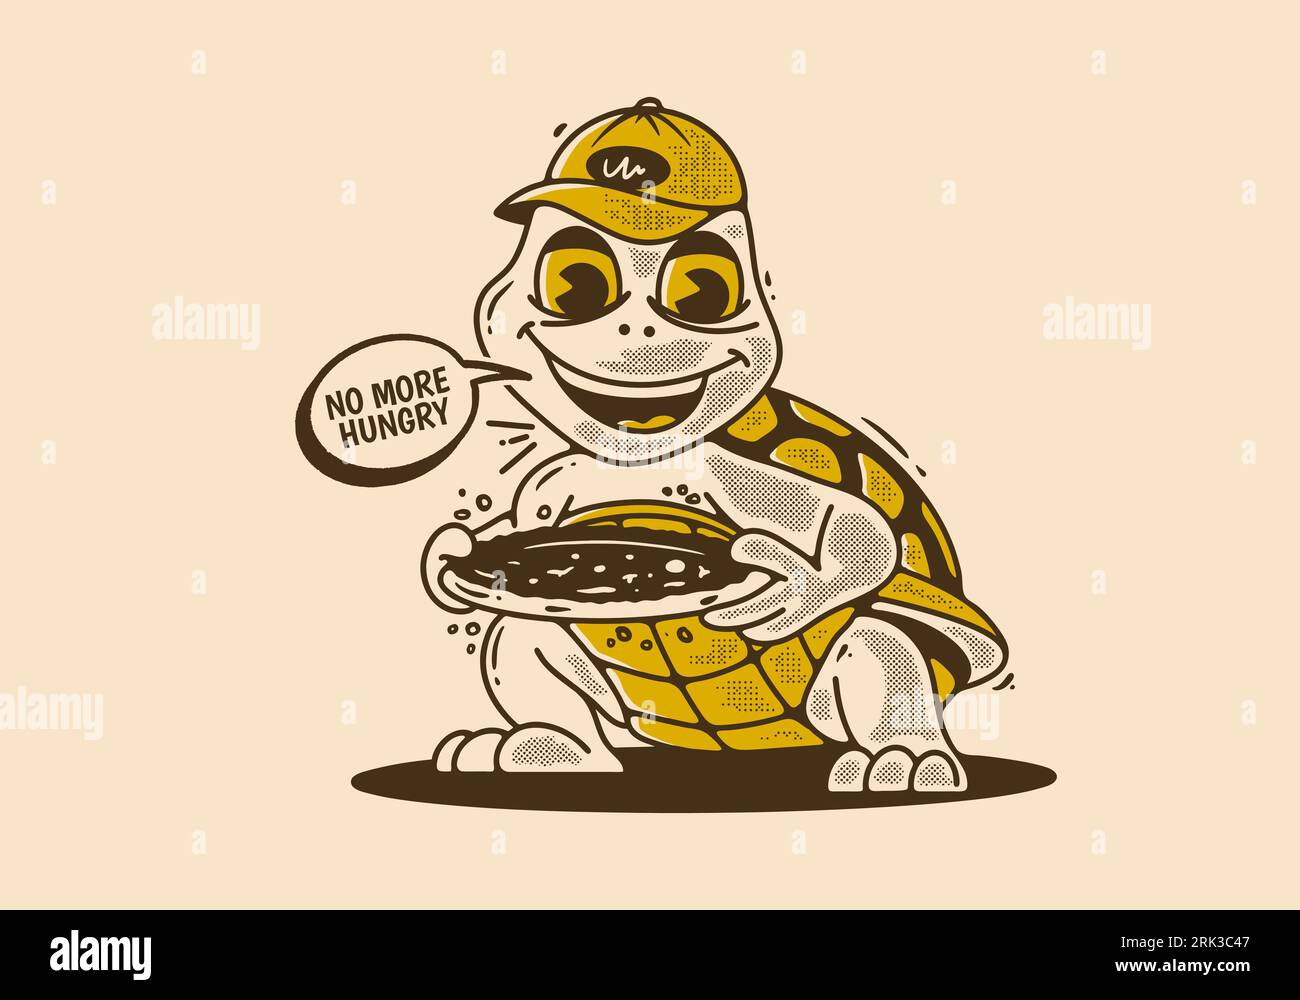 Illustration de personnage de mascotte rétro d'une tortue tenant une pizza Illustration de Vecteur